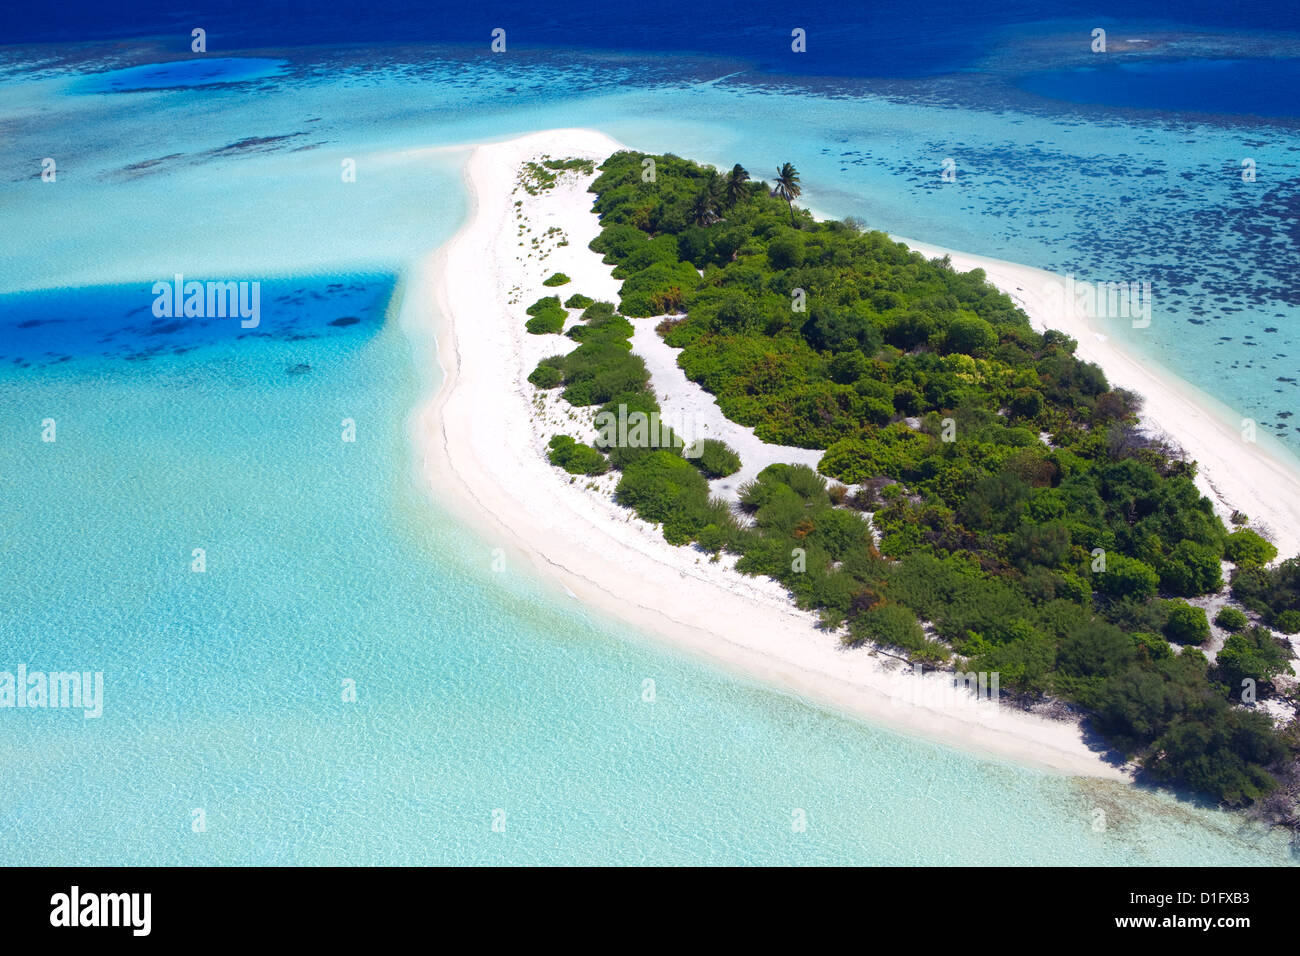 Vue aérienne d'une île déserte, Maldives, océan Indien, Asie Banque D'Images